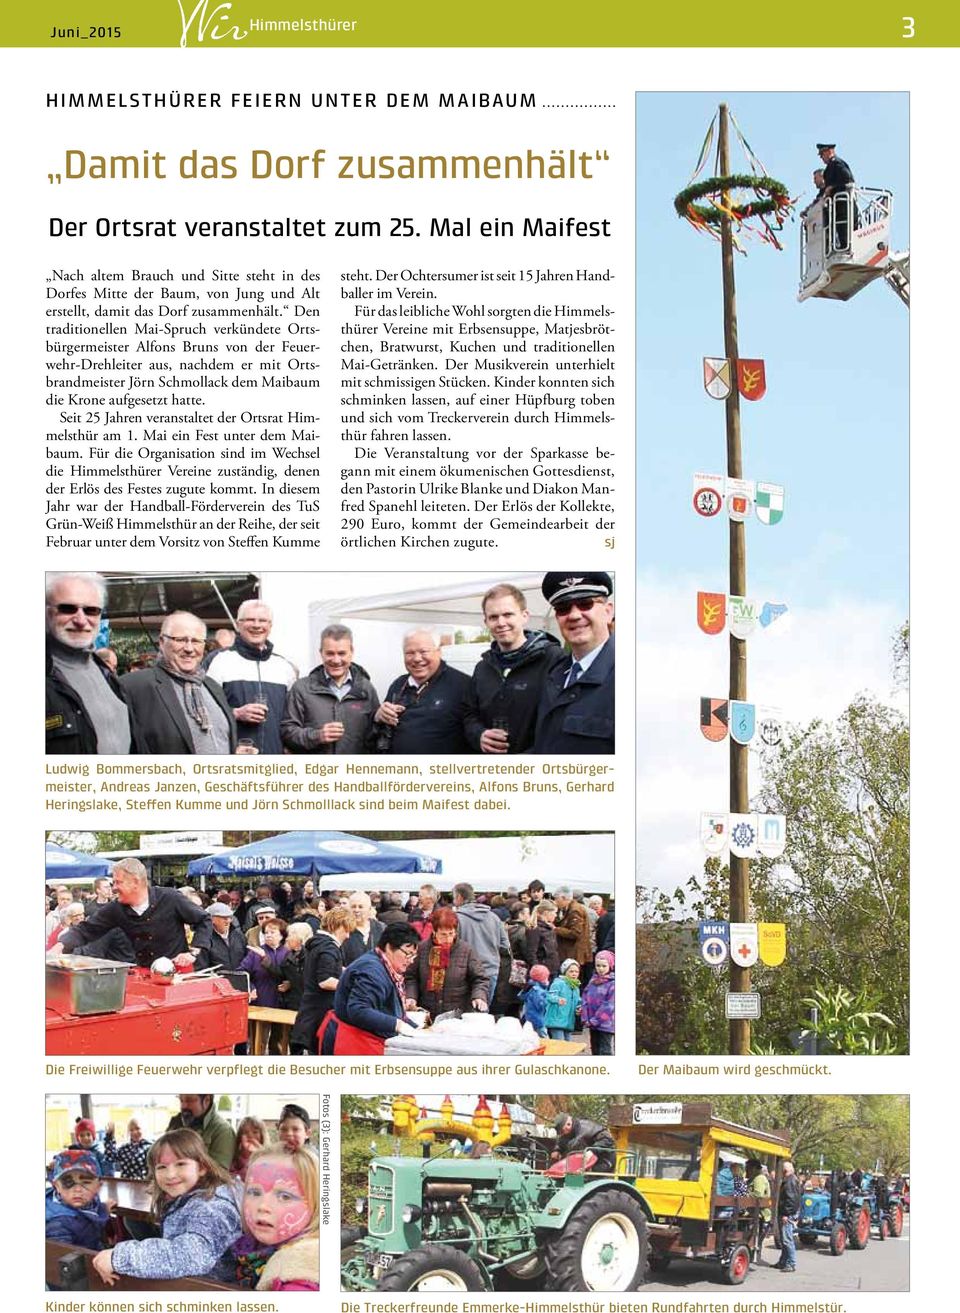 Den traditionellen Mai-Spruch verkündete Ortsbürgermeister Alfons Bruns von der Feuerwehr-Drehleiter aus, nachdem er mit Ortsbrandmeister Jörn Schmollack dem Maibaum die Krone aufgesetzt hatte.